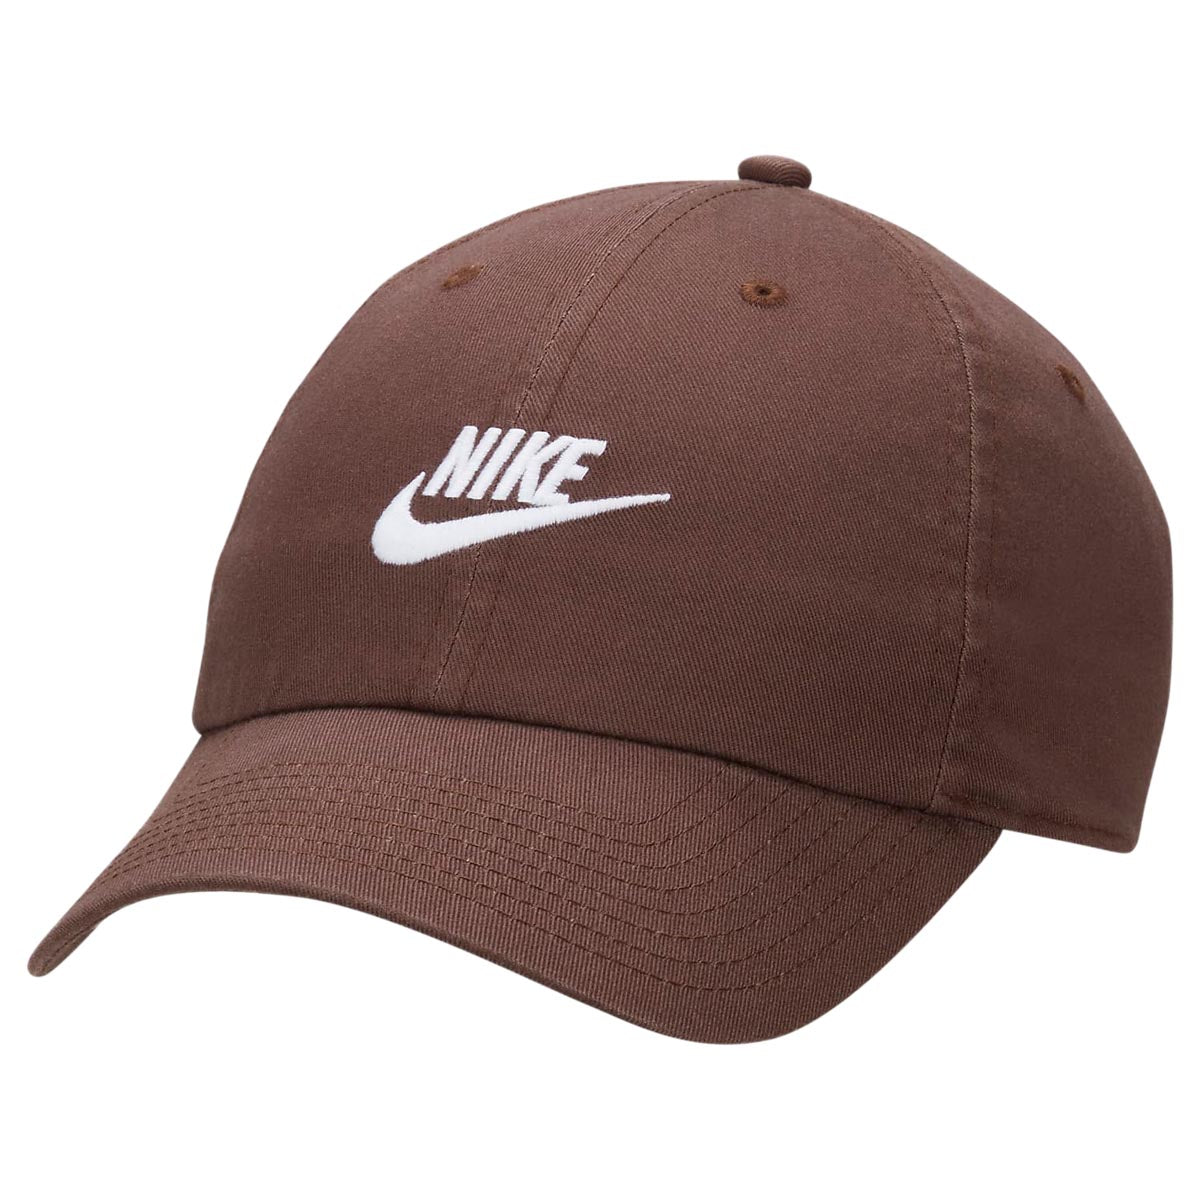 Nike SB Futbol Club Hat - Baroque Brown/White image 1